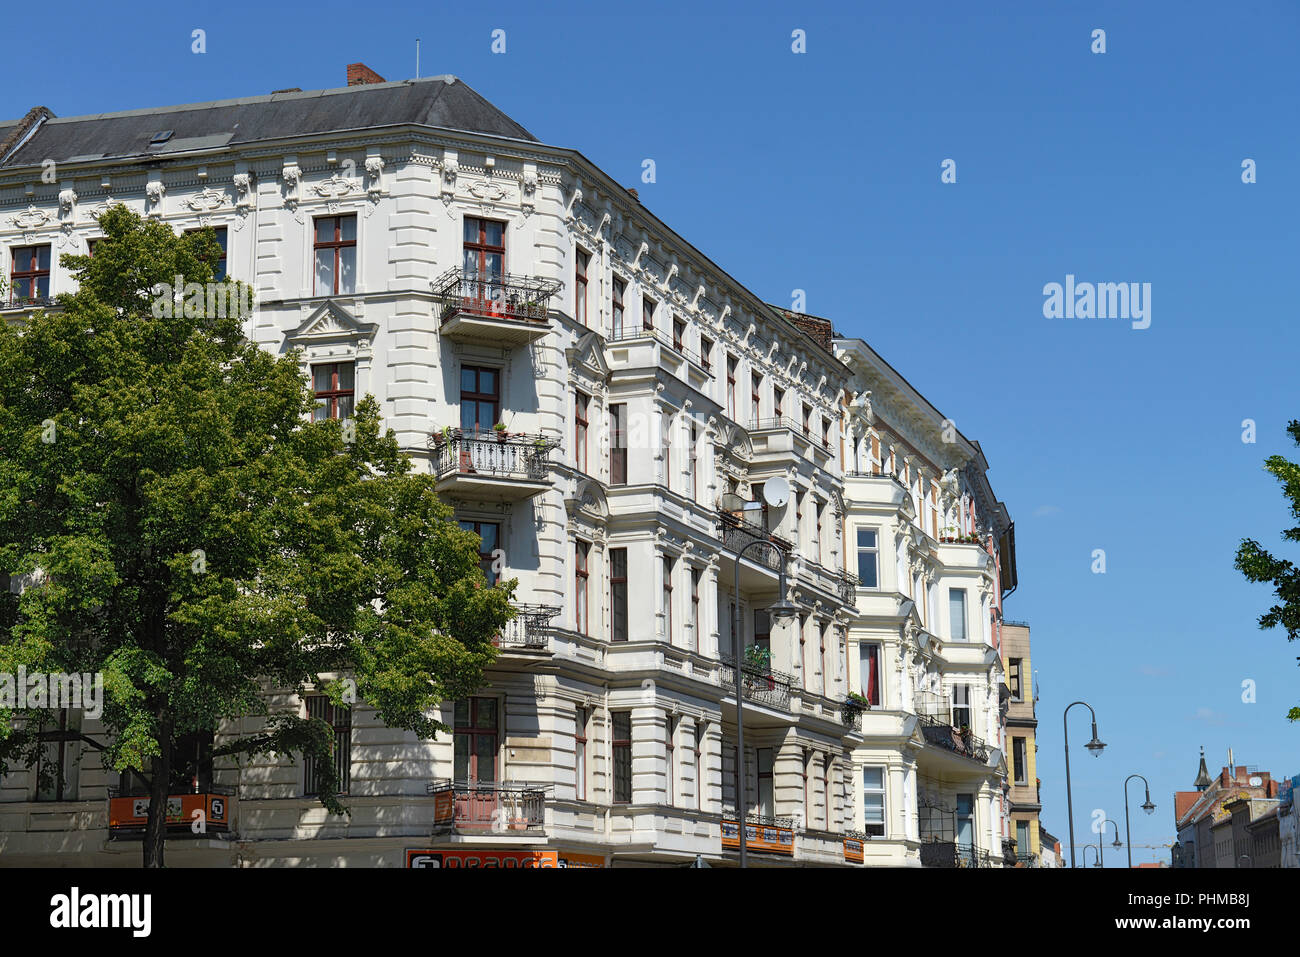 Altbauten, Karl-Marx-Strasse, Neukoelln, Berlin, Deutschland Stock Photo